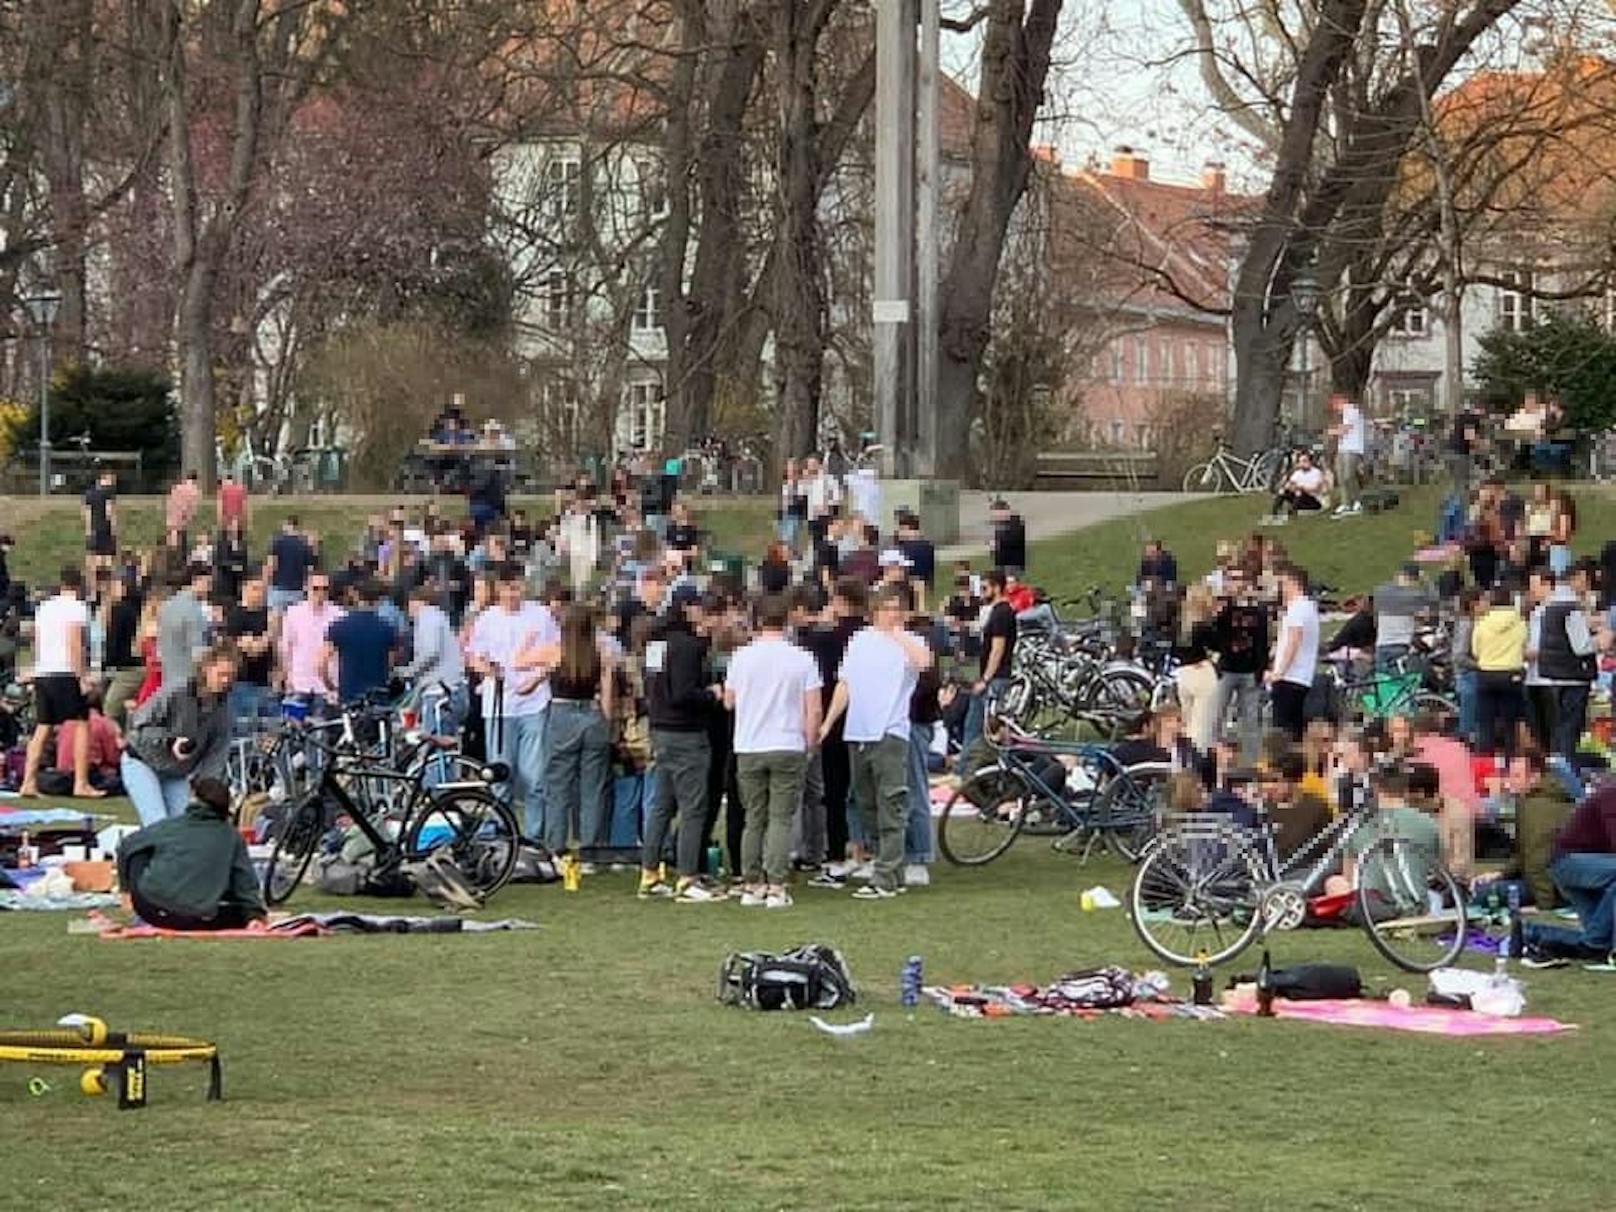 Auflauf von Jugendlichen am Wochenende im Grazer Stadtpark. Ein Experte warnt vor solchen Treffen.